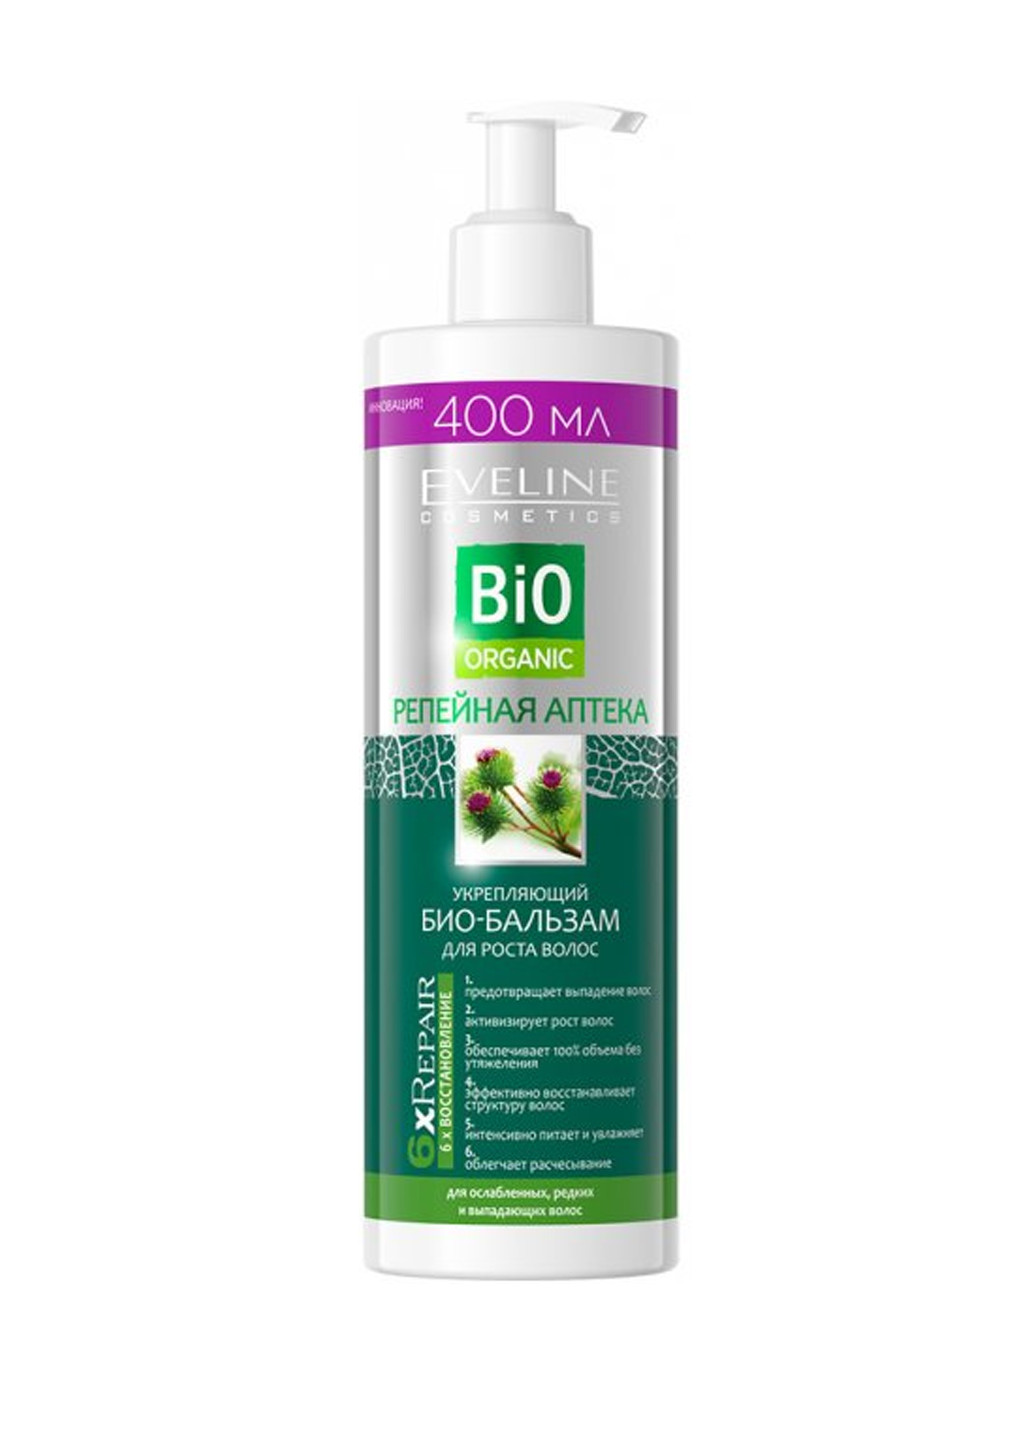 Реп'яхова аптека - зміцнюючий біо-бальзам для росту волосся серії bio organic, 400 мл Eveline Cosmetics 5903416033349 (257275692)